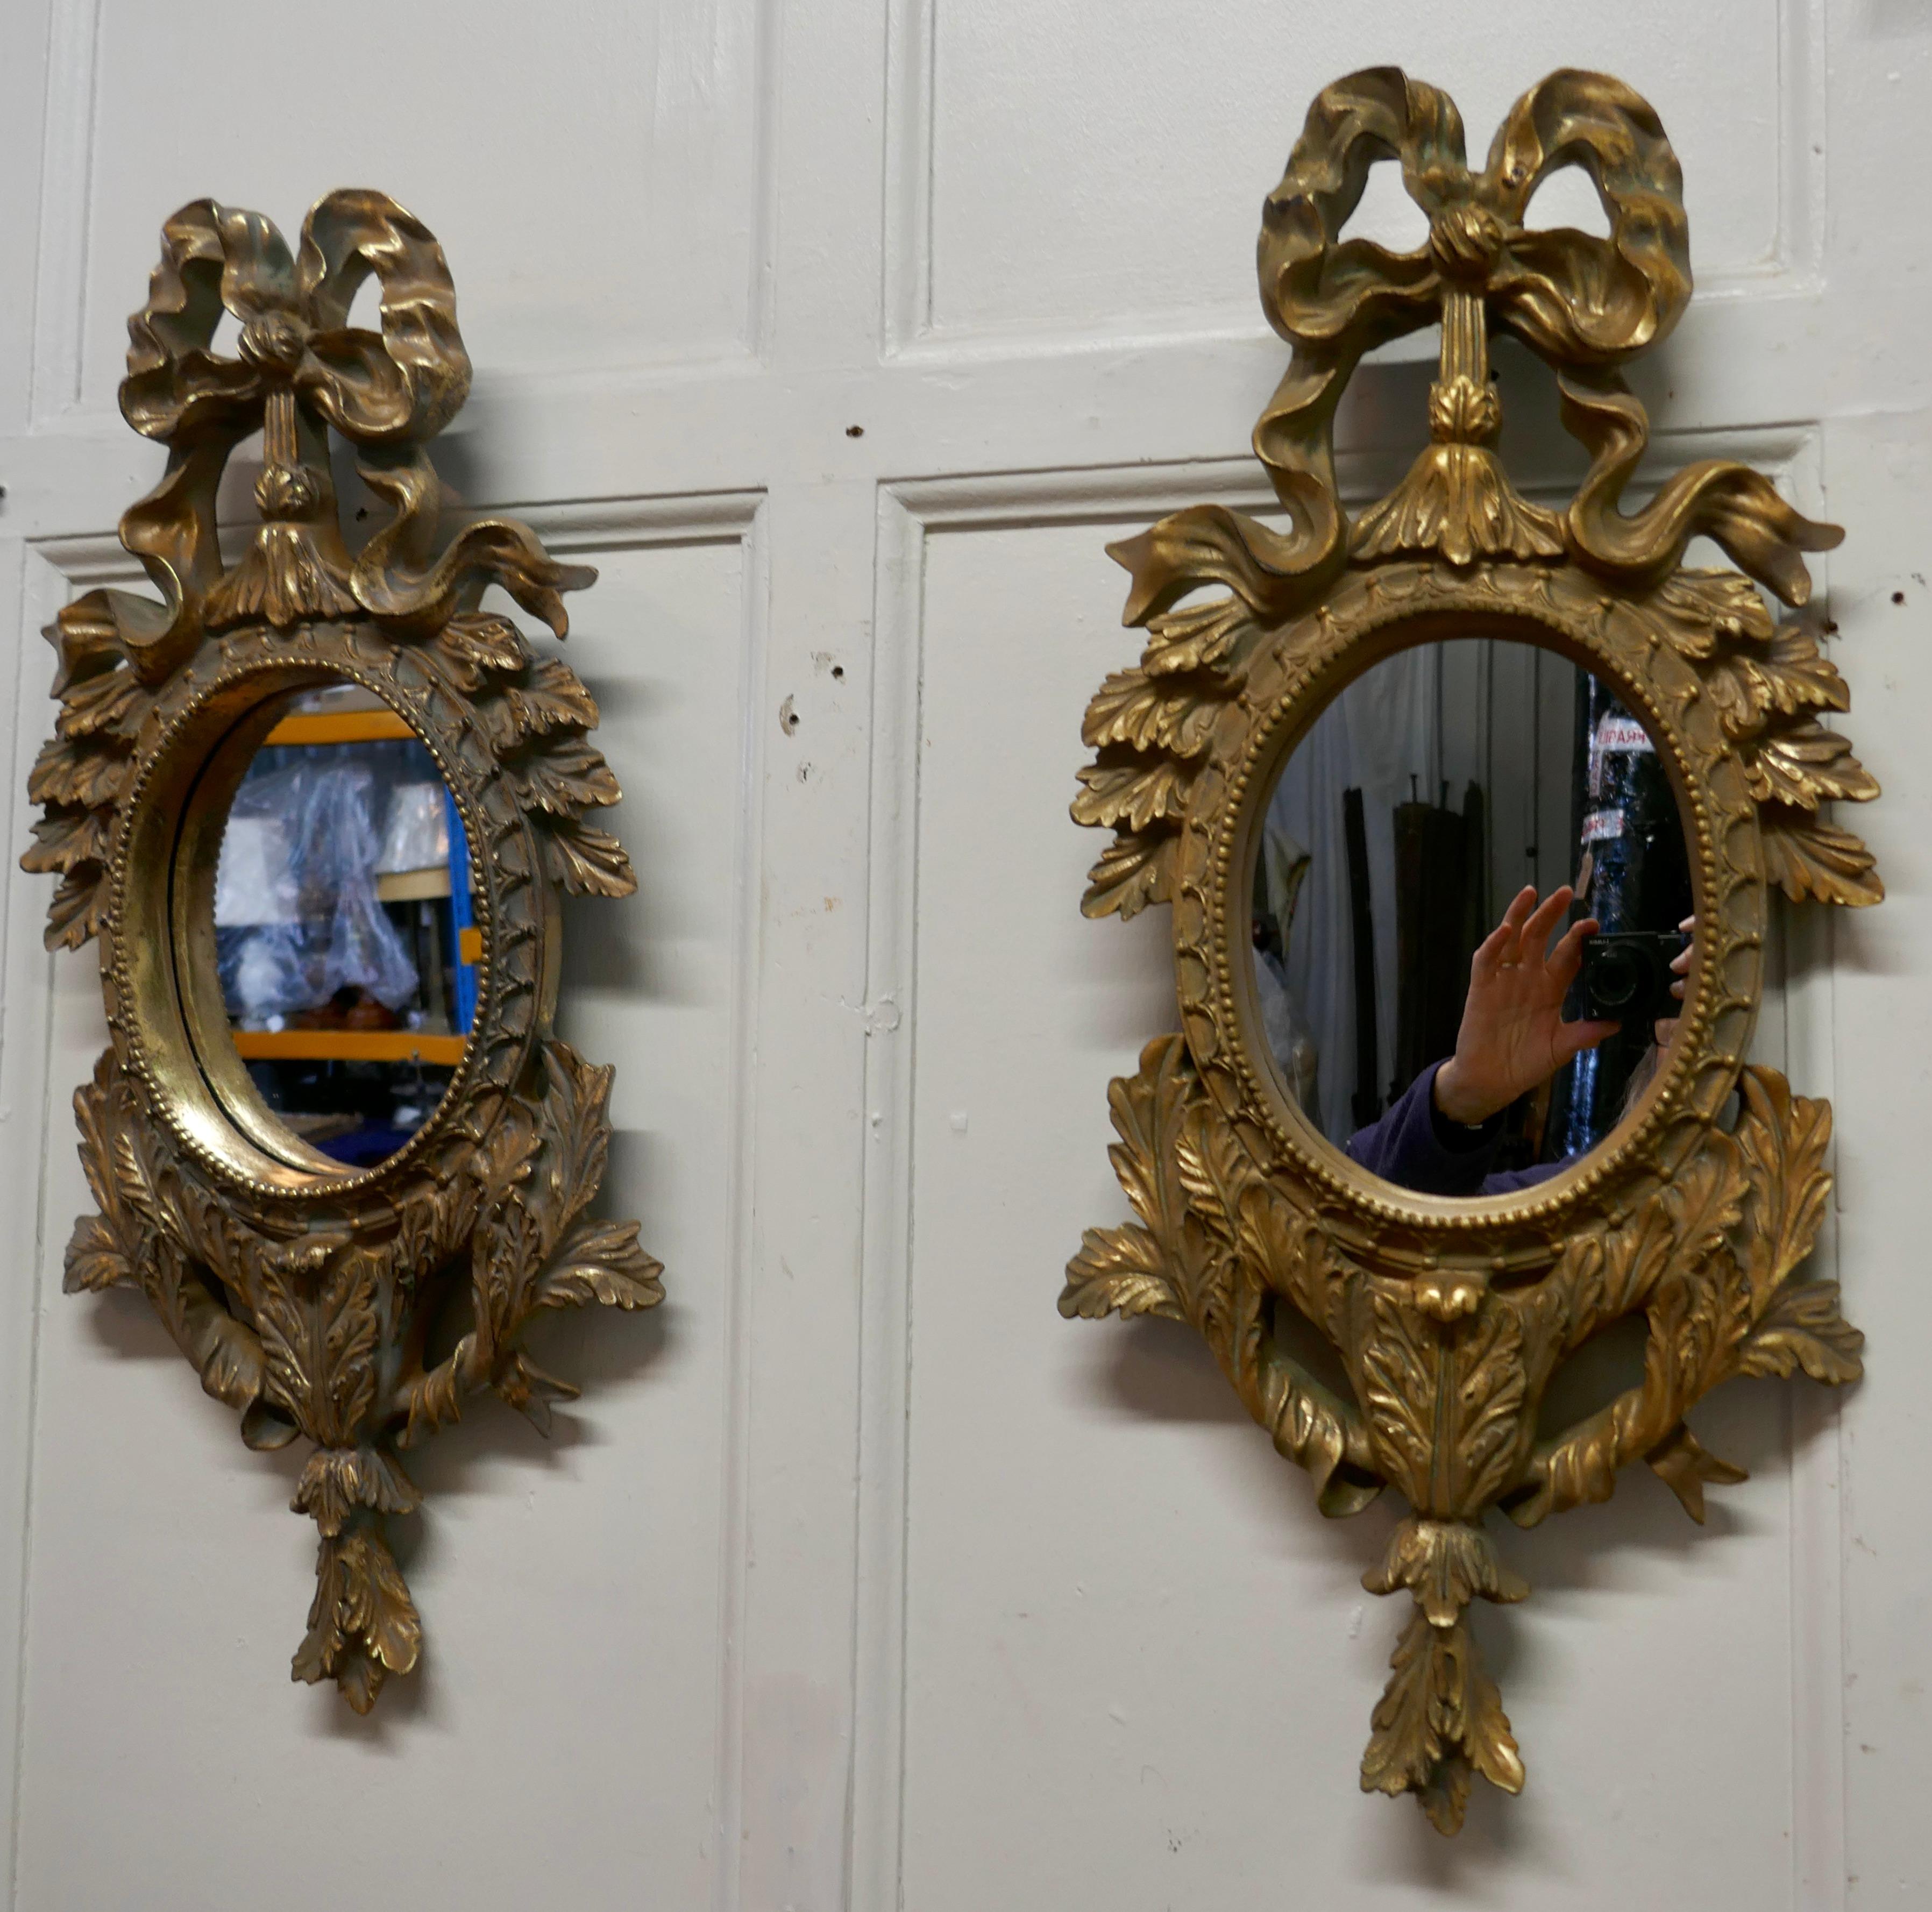 Paire de miroirs muraux ovales rococo en vermeil

Chacun des miroirs a un cadre doré exquis de style rococo, avec un grand ruban sur le dessus et une abondante décoration de feuilles d'acanthe tout autour 
Les miroirs ont une largeur de 12 pouces